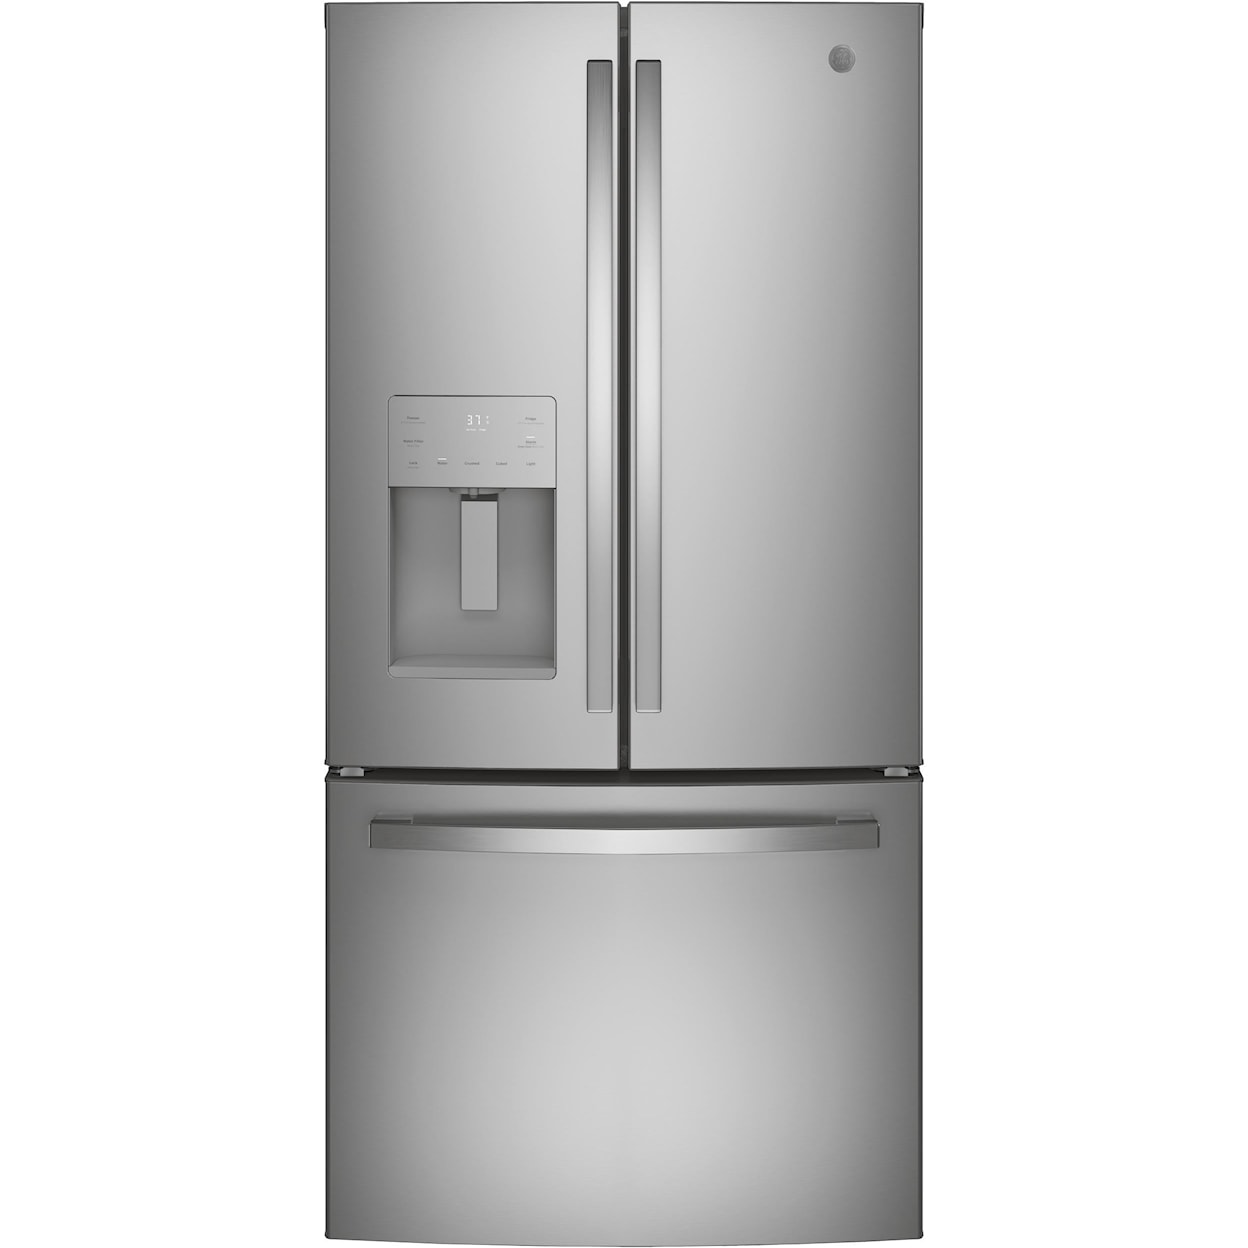 GE Appliances Refrigerators French Door Freestanding Refrigerator